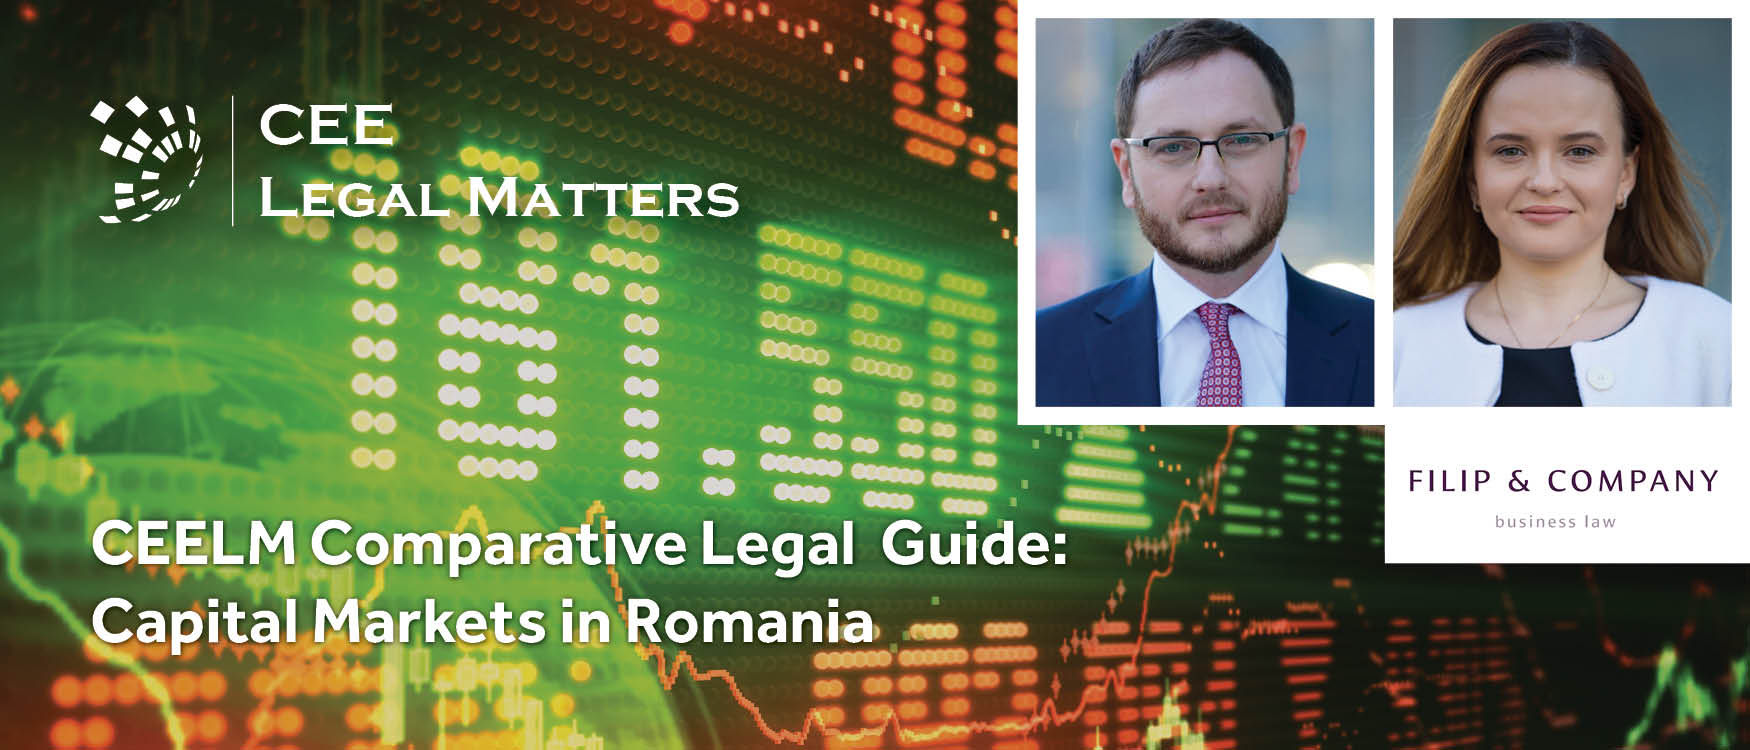 Capital Markets in Romania